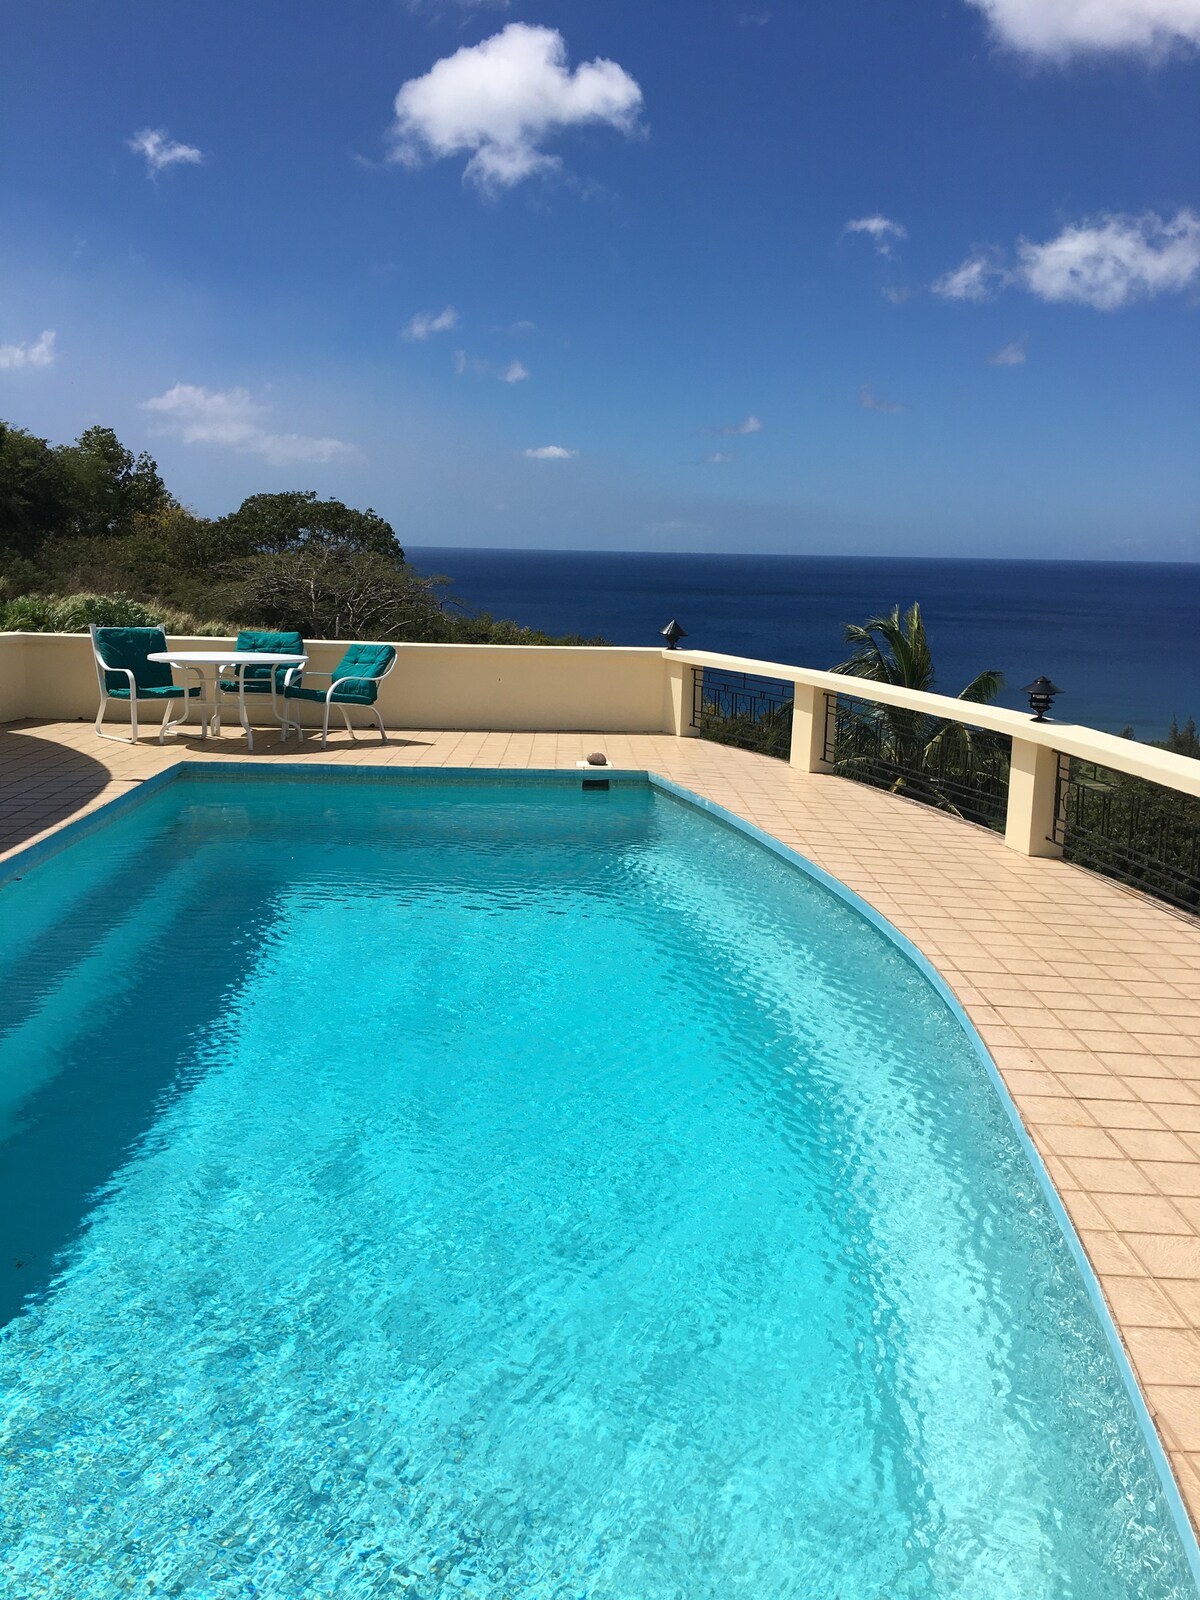 Stunning 4-bedroom Villa overlooking the sea